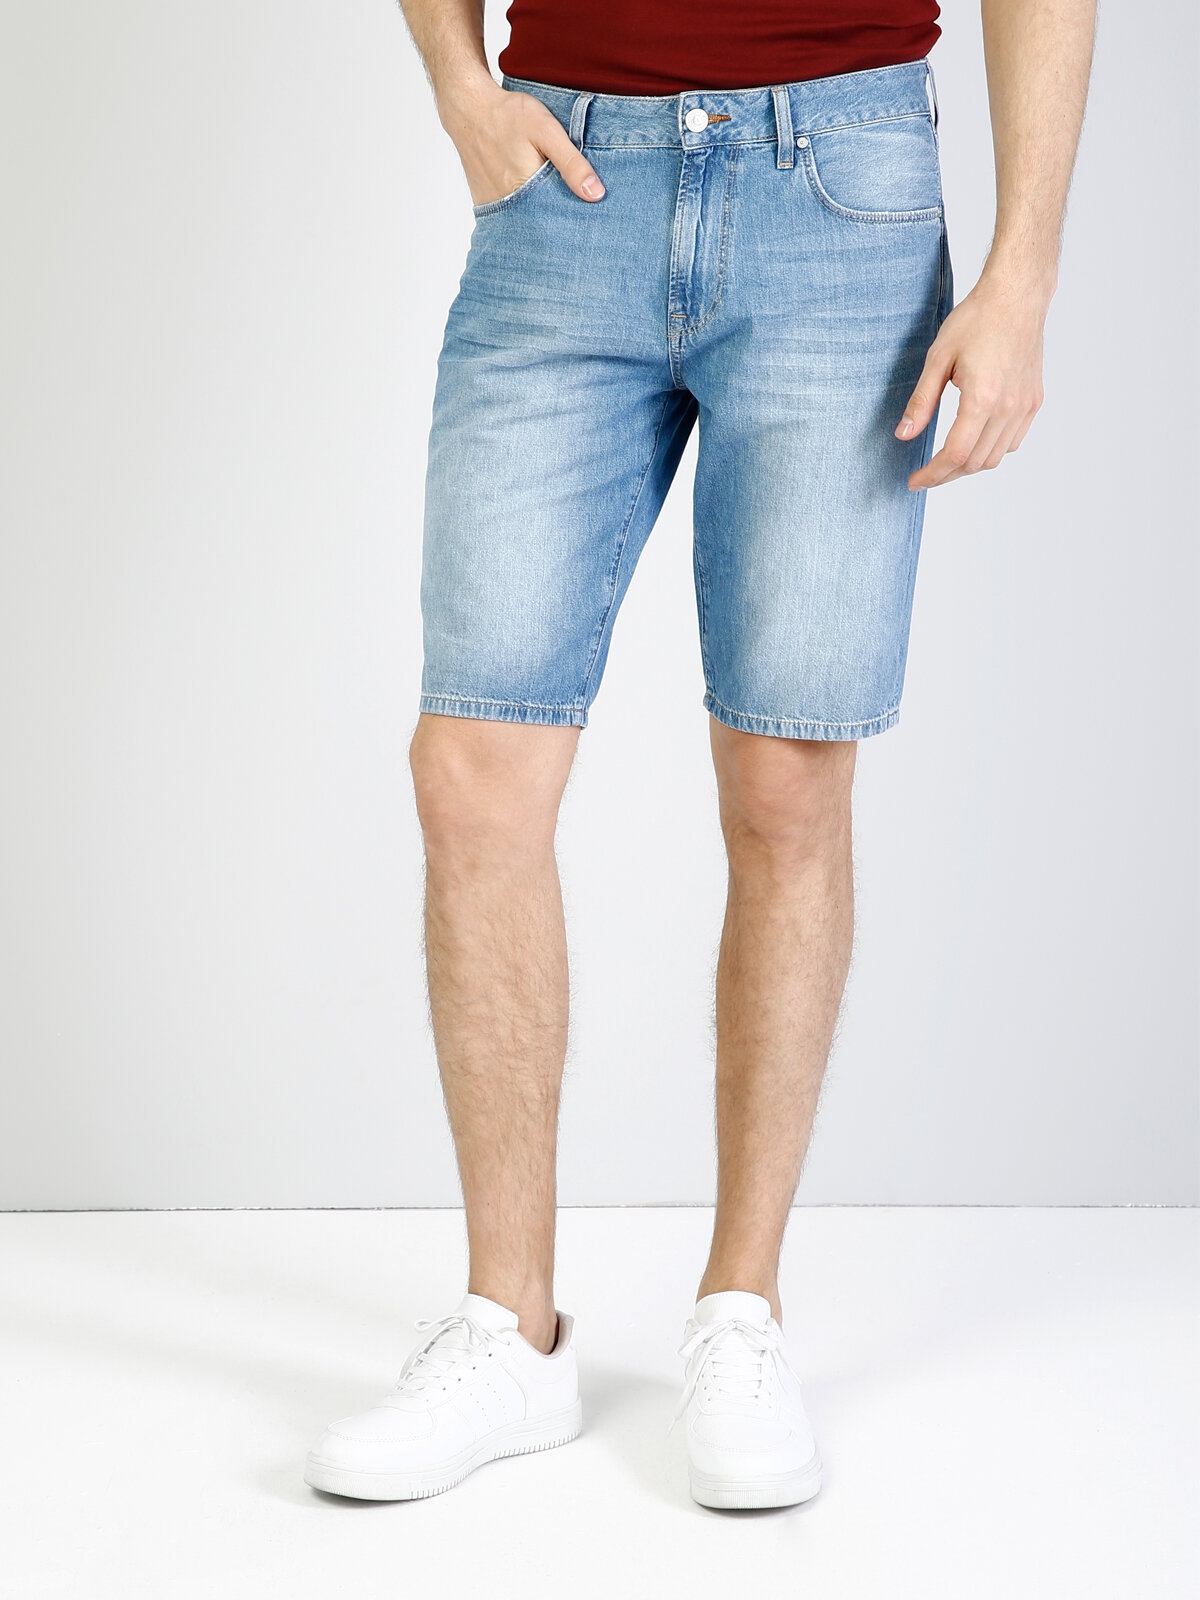 Afișați detalii pentru Albastru Barbati Short / Pantaloni Scurti Regular Fit